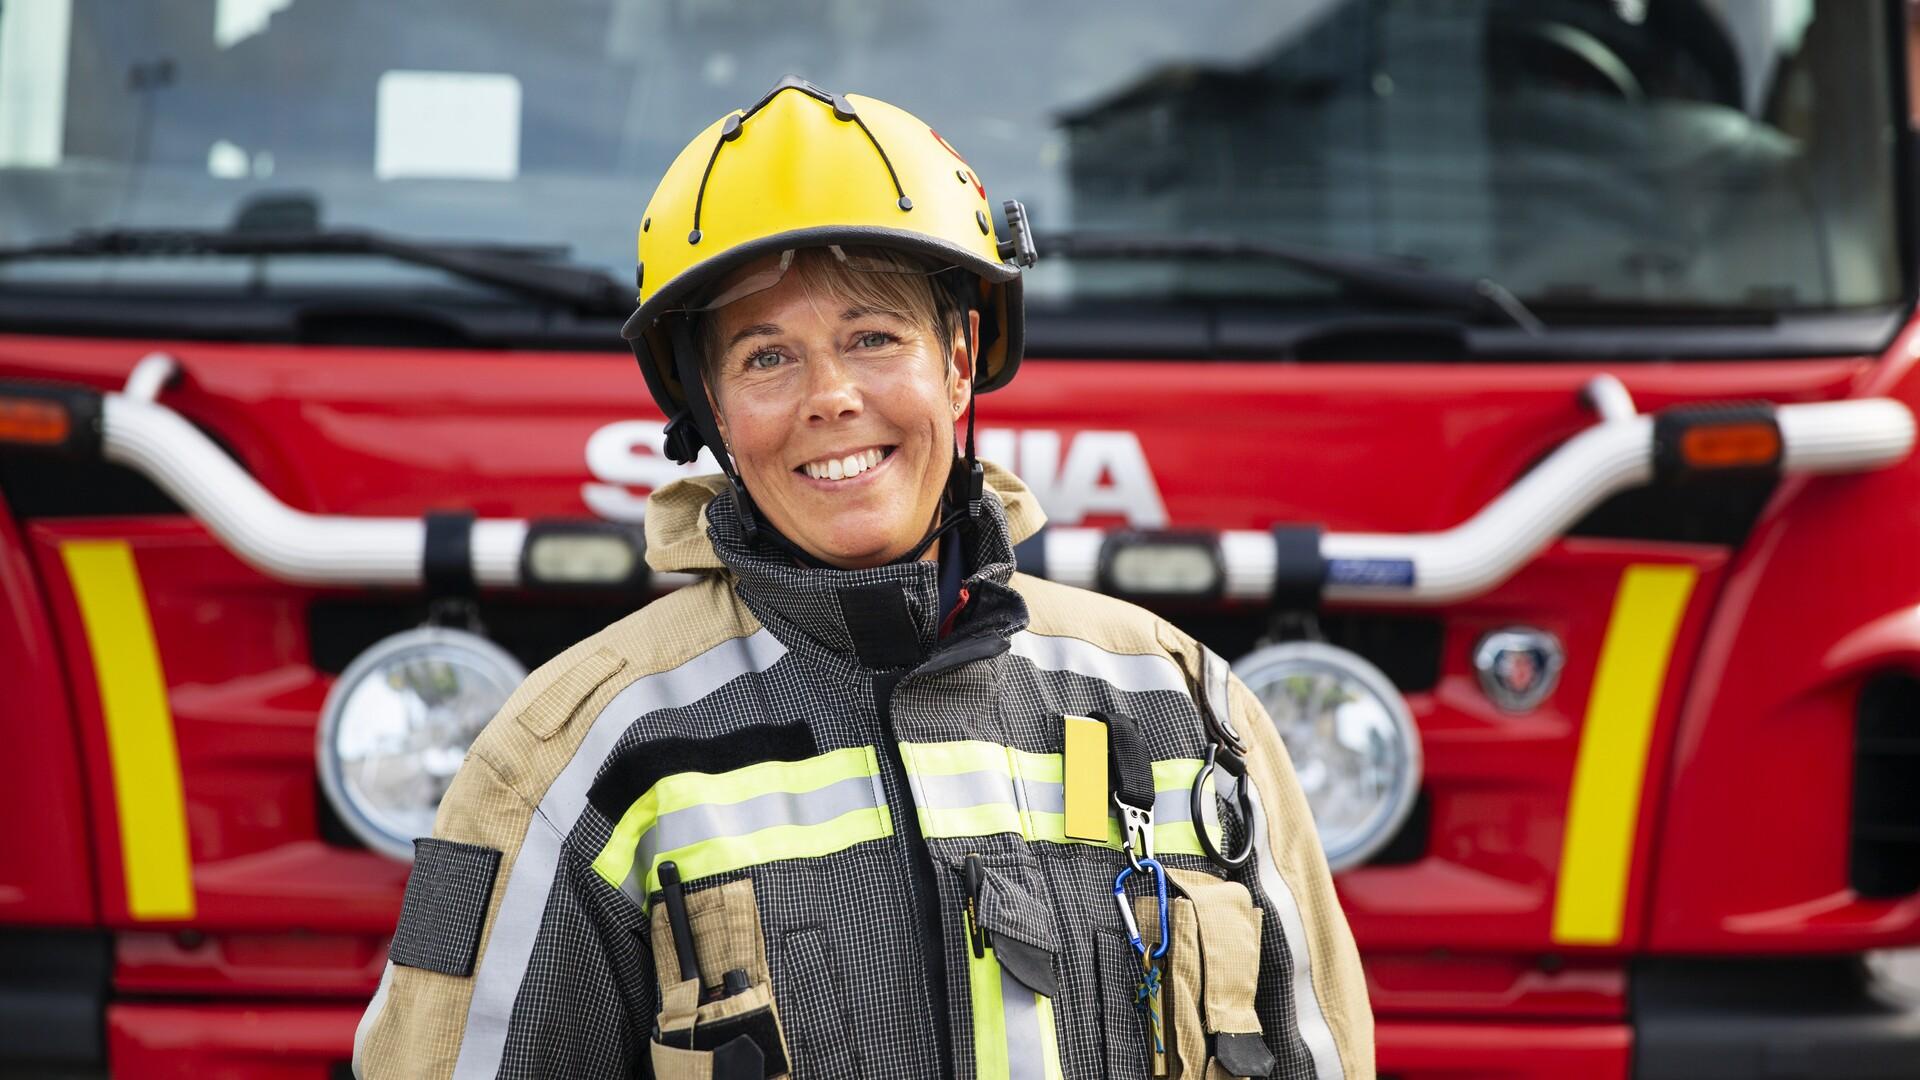 Kvinnlig brandman framför brandbil.